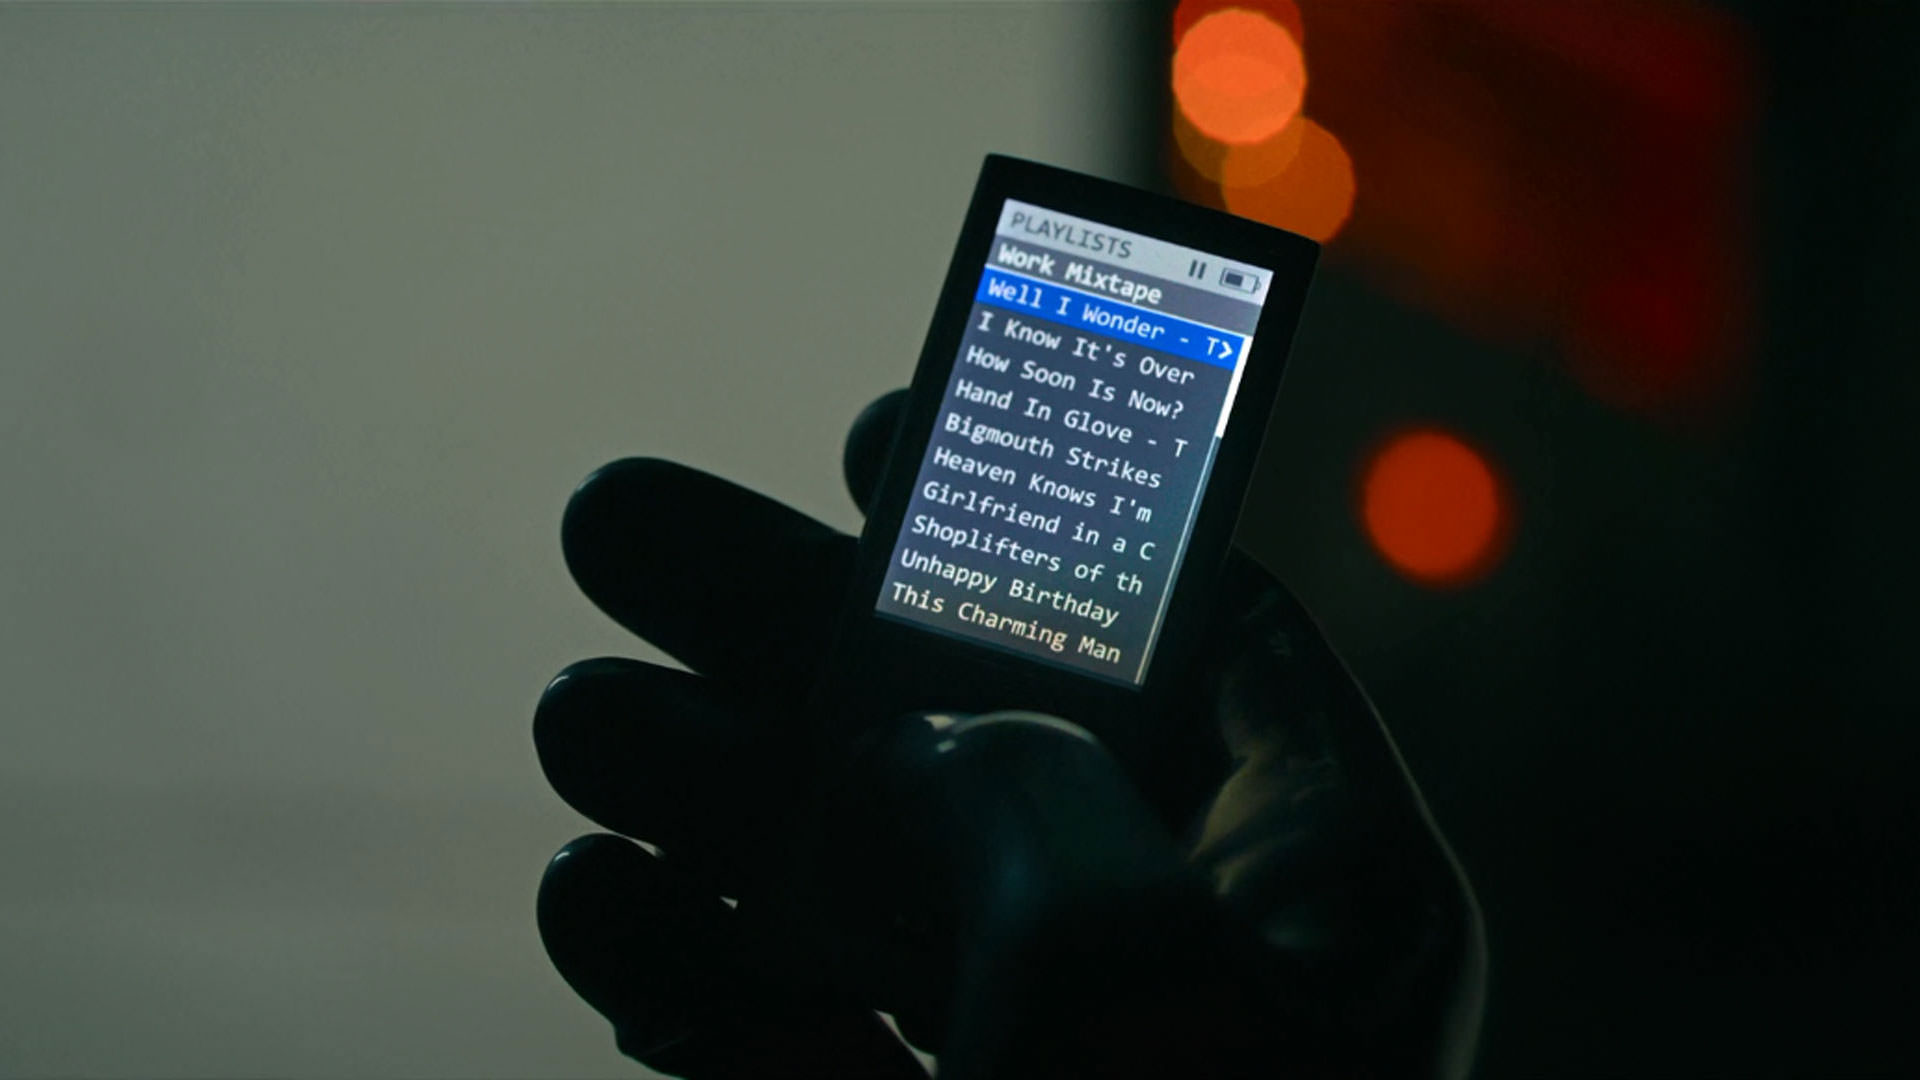 نمایی از یک آیپاد در دستان مردی که دستکشی سیاه پوشیده است در فیلم قاتل به کارگردانی دیوید فینچر